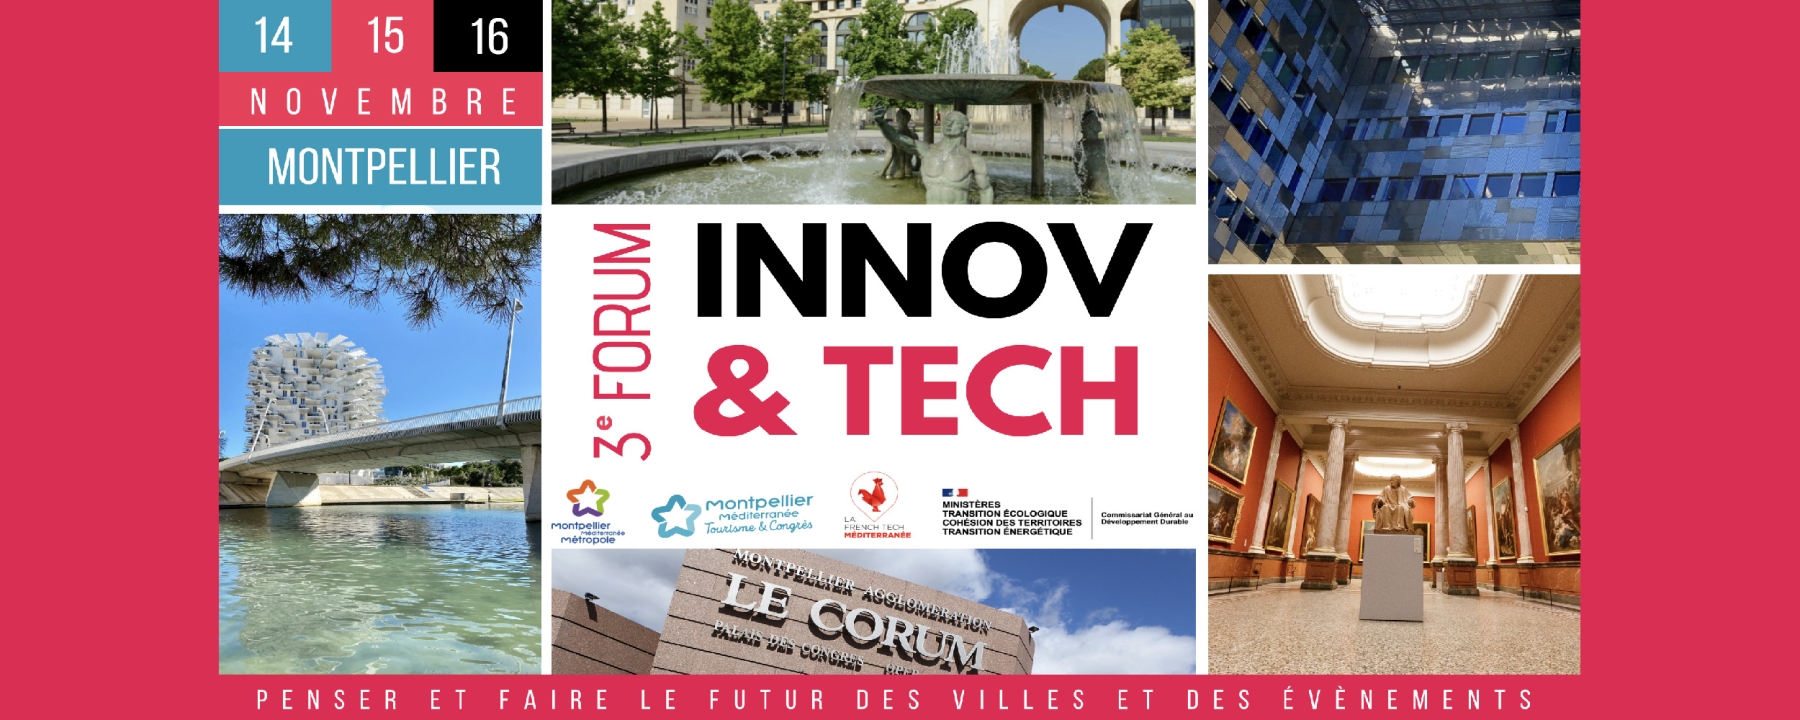 Forum Innov & Tech : Penser et faire le futur des villes et des événements